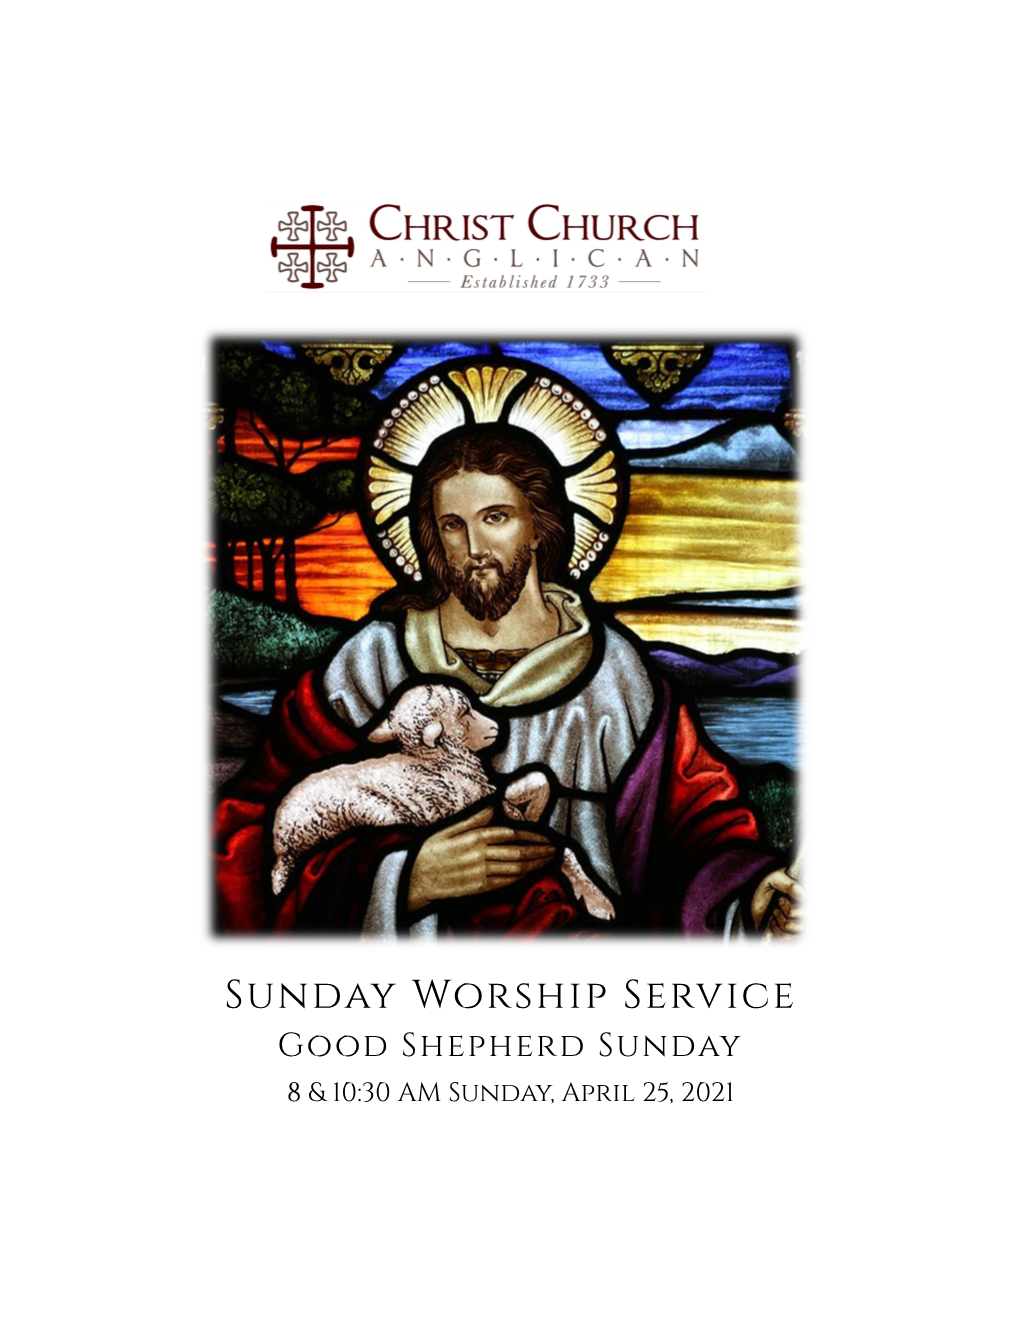 Sunday Worship Service Good Shepherd Sunday 8 & 10:30 AM Sunday, April 25, 2021